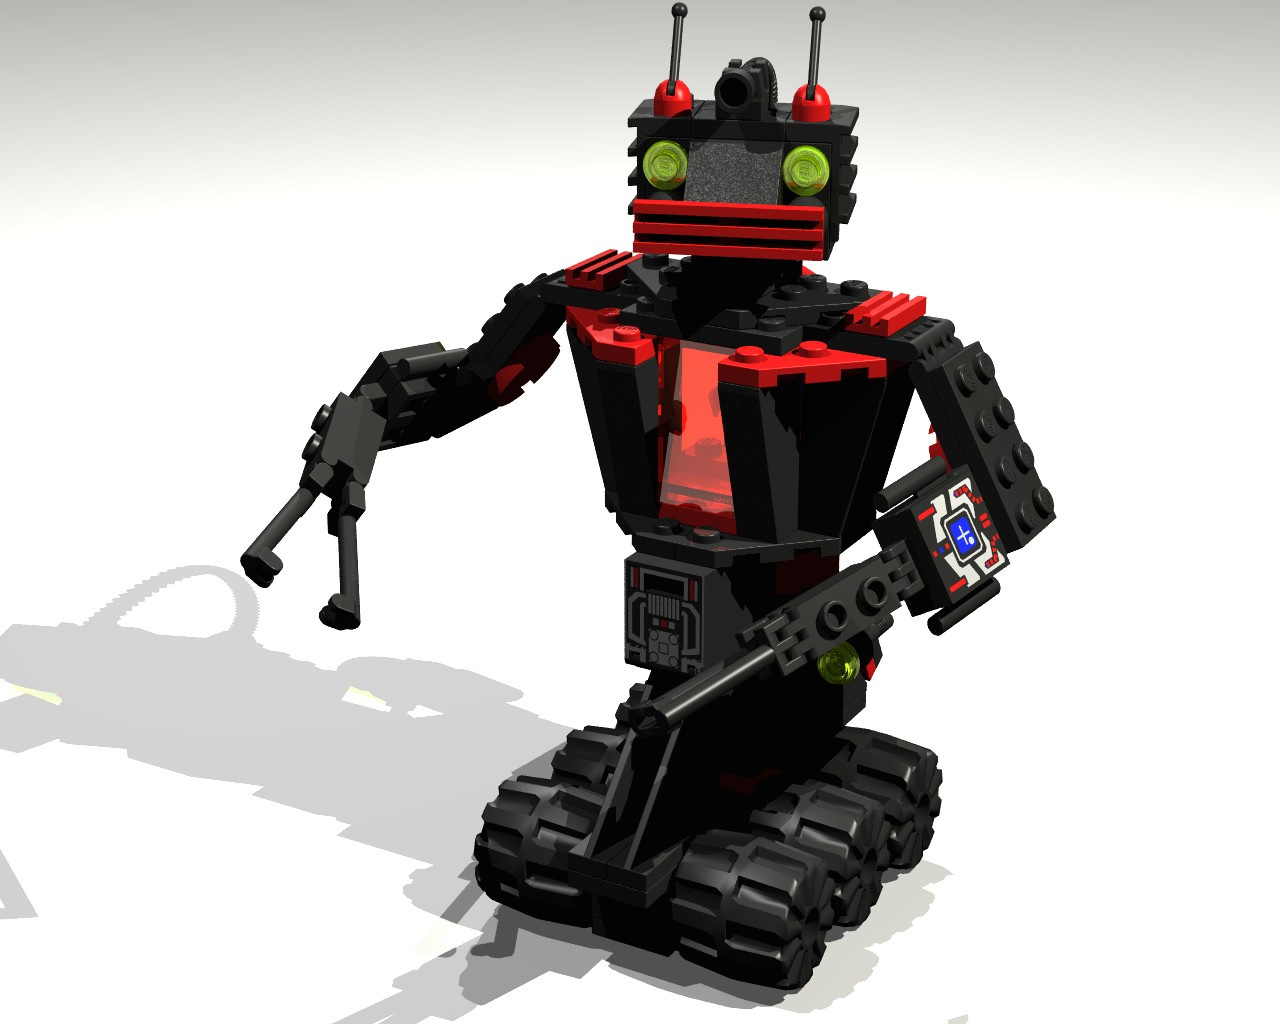 6889 Recon Robot